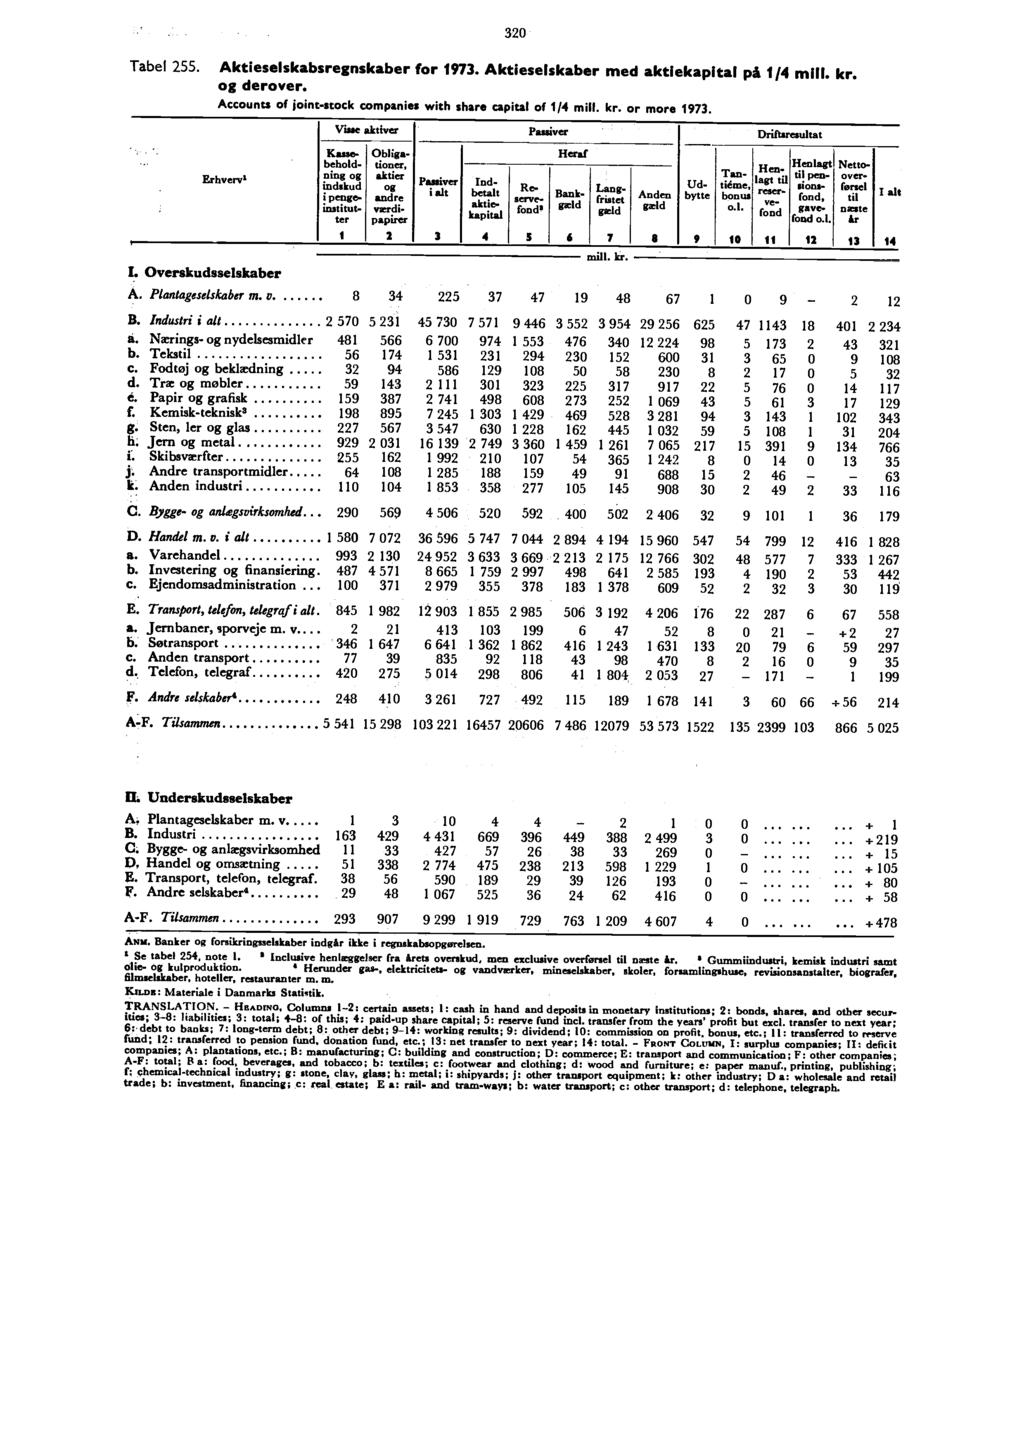 Tabel 255. 320 Aktieselskabsregnskaber for 1973. Aktieselskaber med aktiekapital på 114 milt. kr. og derover. Accounts of joint-stock companies with share capital of 1/4 or more 1973.